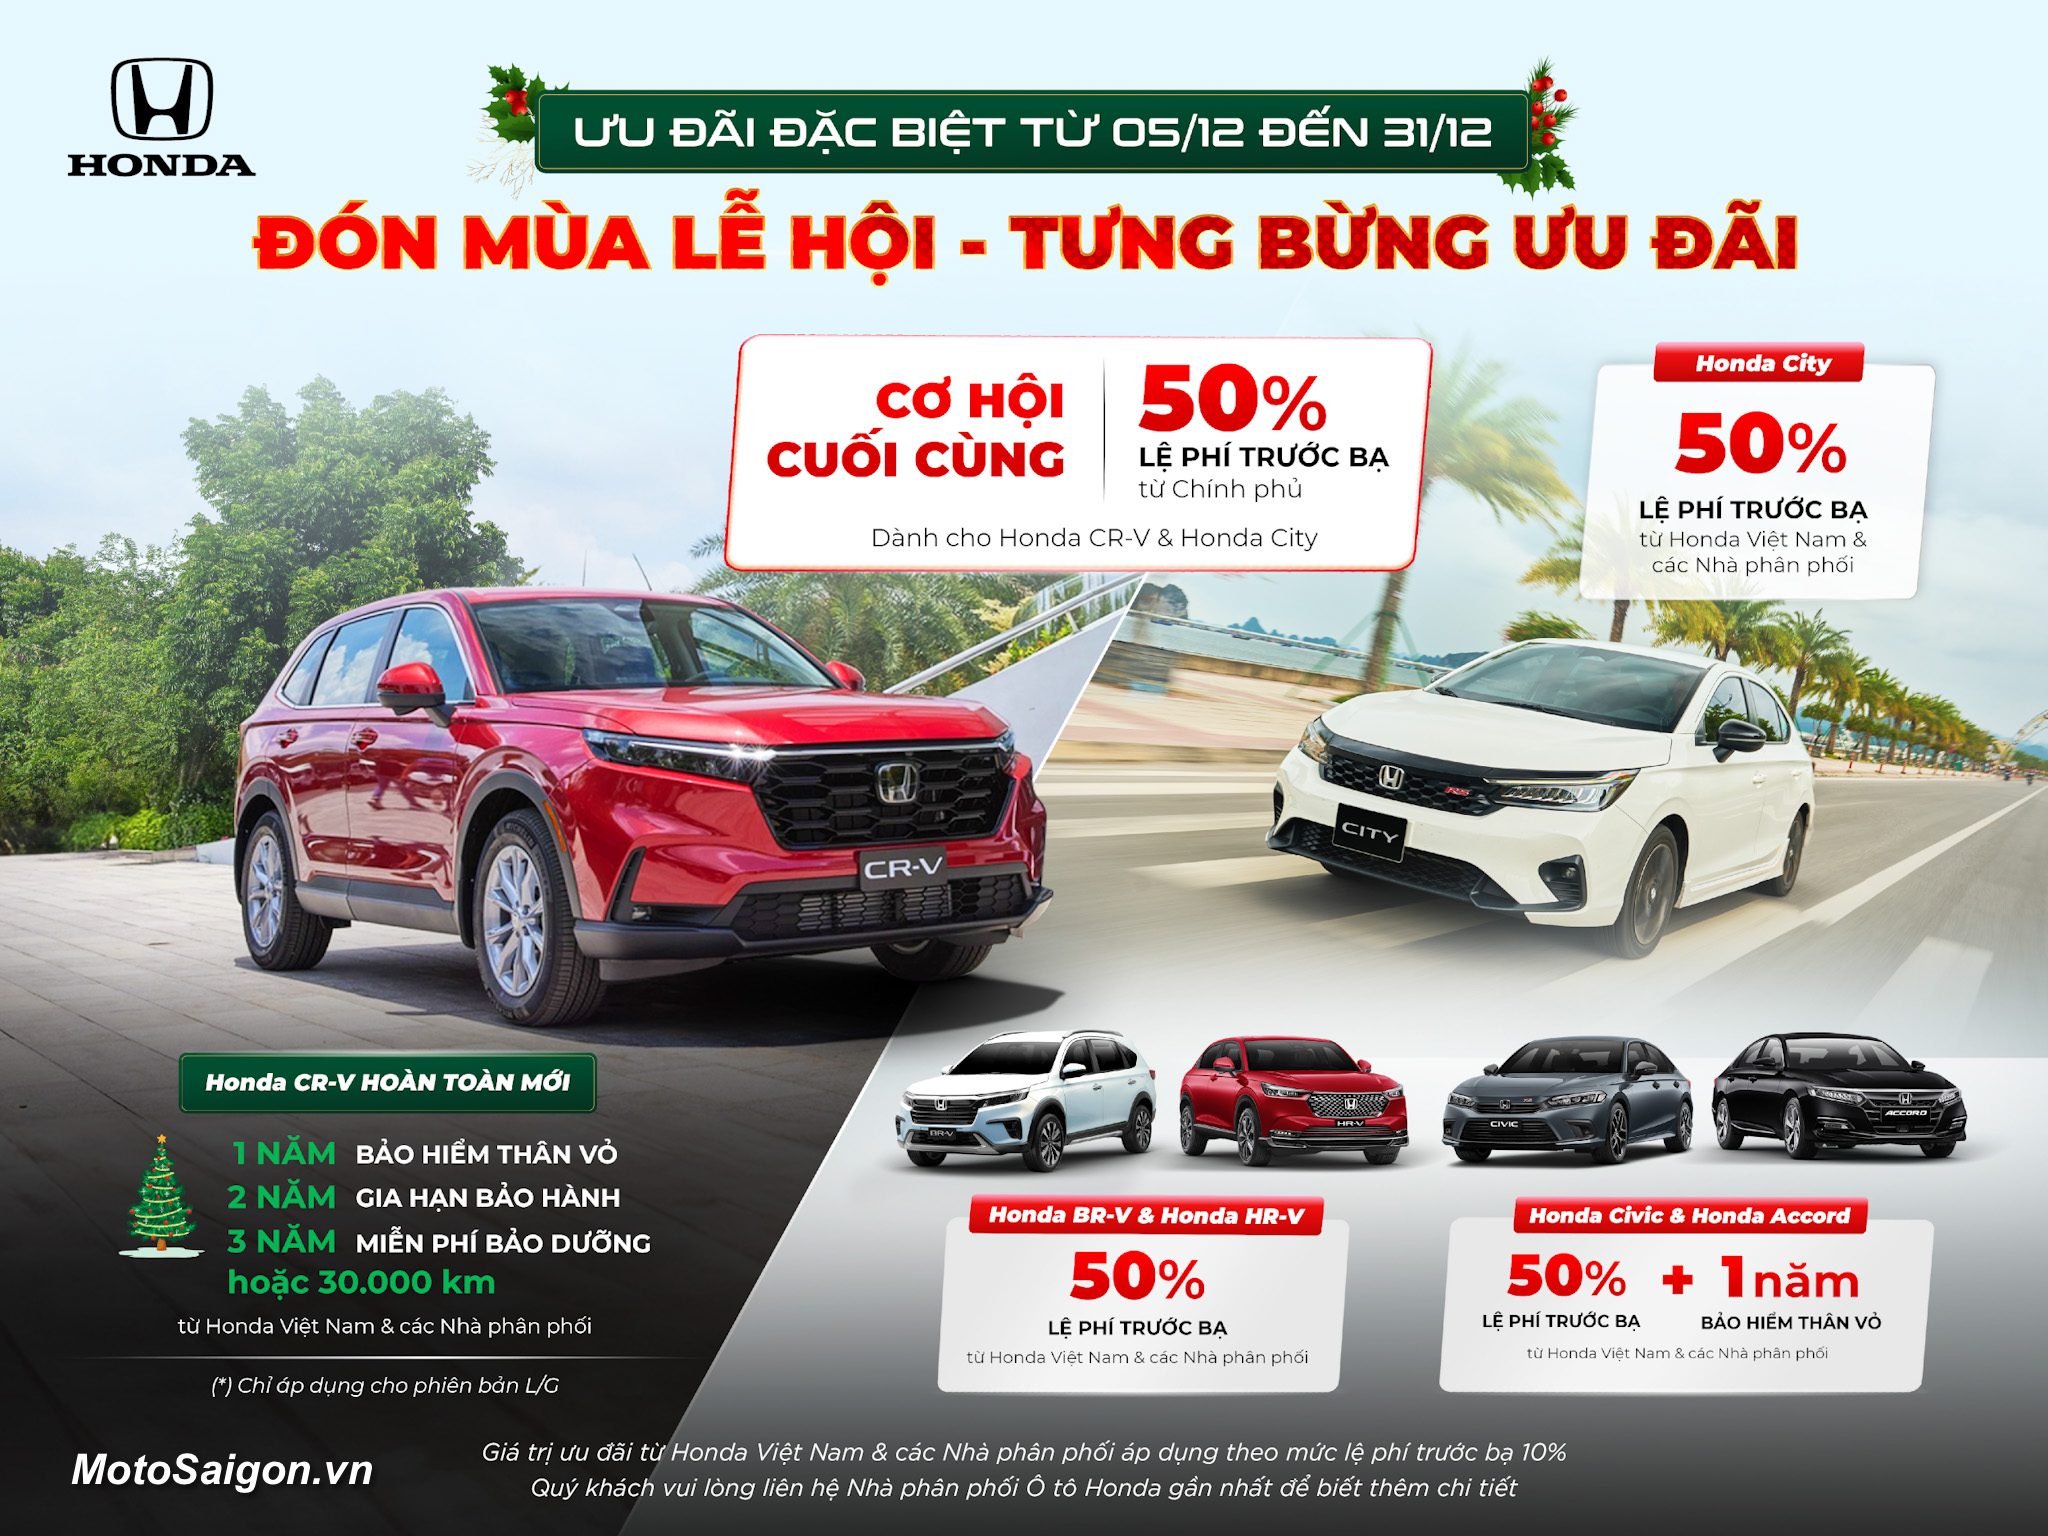 Honda Việt Nam tung chương trình ưu đãi cho các mẫu xe ô tô